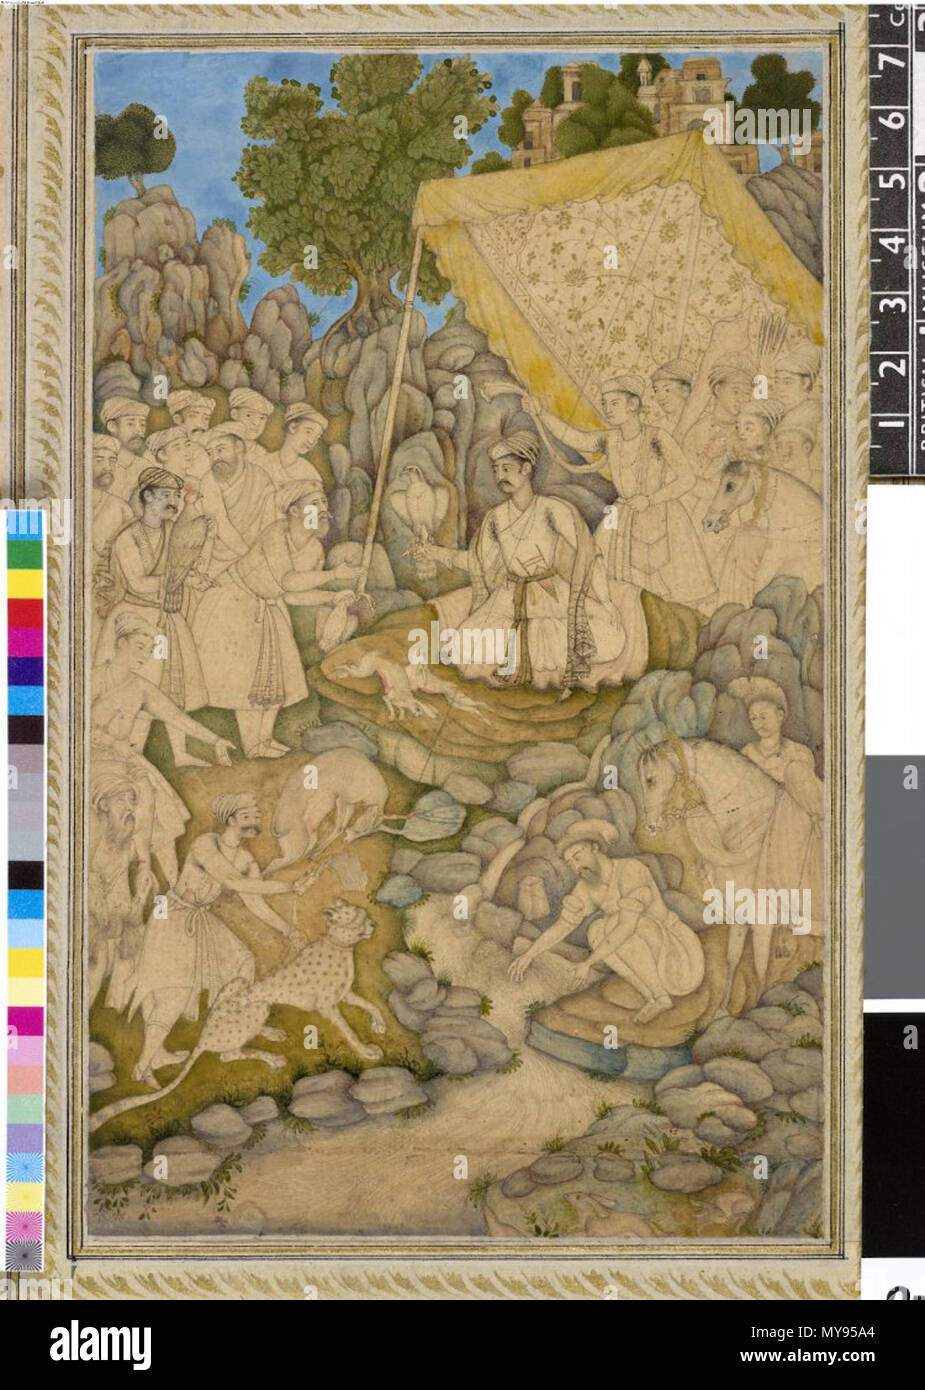 . Englisch: Alexander ruht auf einer Hütte Mughal India, C. 1605 eingeschrieben auf dem Berg: ikandar Shah "Tinte, Gold und Aquarell auf Papier die Kombination von Zeichnung und Malerei in einer Arbeit wurde in Mughal India beliebt im späten 16. und frühen 17. Jahrhunderts. Der Künstler hat die Landschaft gemalt hat aber nur einen Hauch von Farbe auf den menschlichen und tierischen Abbildung unter dem Vordach hinzugefügt. Obwohl er als Alexander der Große gekennzeichnet ist, ist er angekleidet und als Mughal. ca. 1605 bewaffnet. Moghul-stil 18A Prince (gekennzeichnet als Alexander der Große) erhält einen Beutel nach der Jagd beim Sitzen unter dem Vordach mit Falcon auf Wr Stockfoto